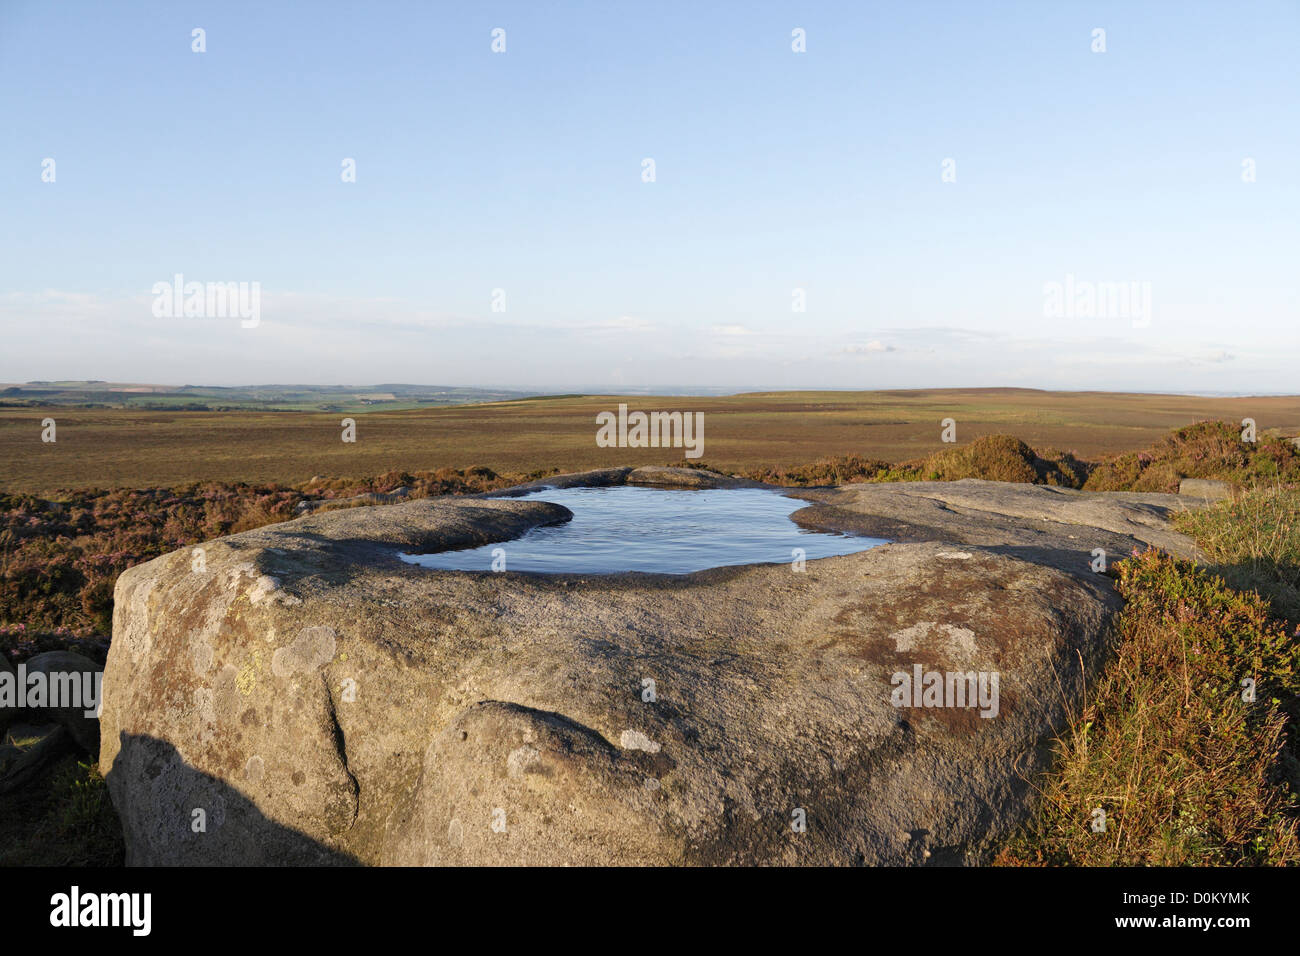 Stanage Edge dans le Derbyshire Peak District, Angleterre. Piscine d'eau coupée en roche pour les oiseaux de tétras à boire. Bassin de rosée Banque D'Images